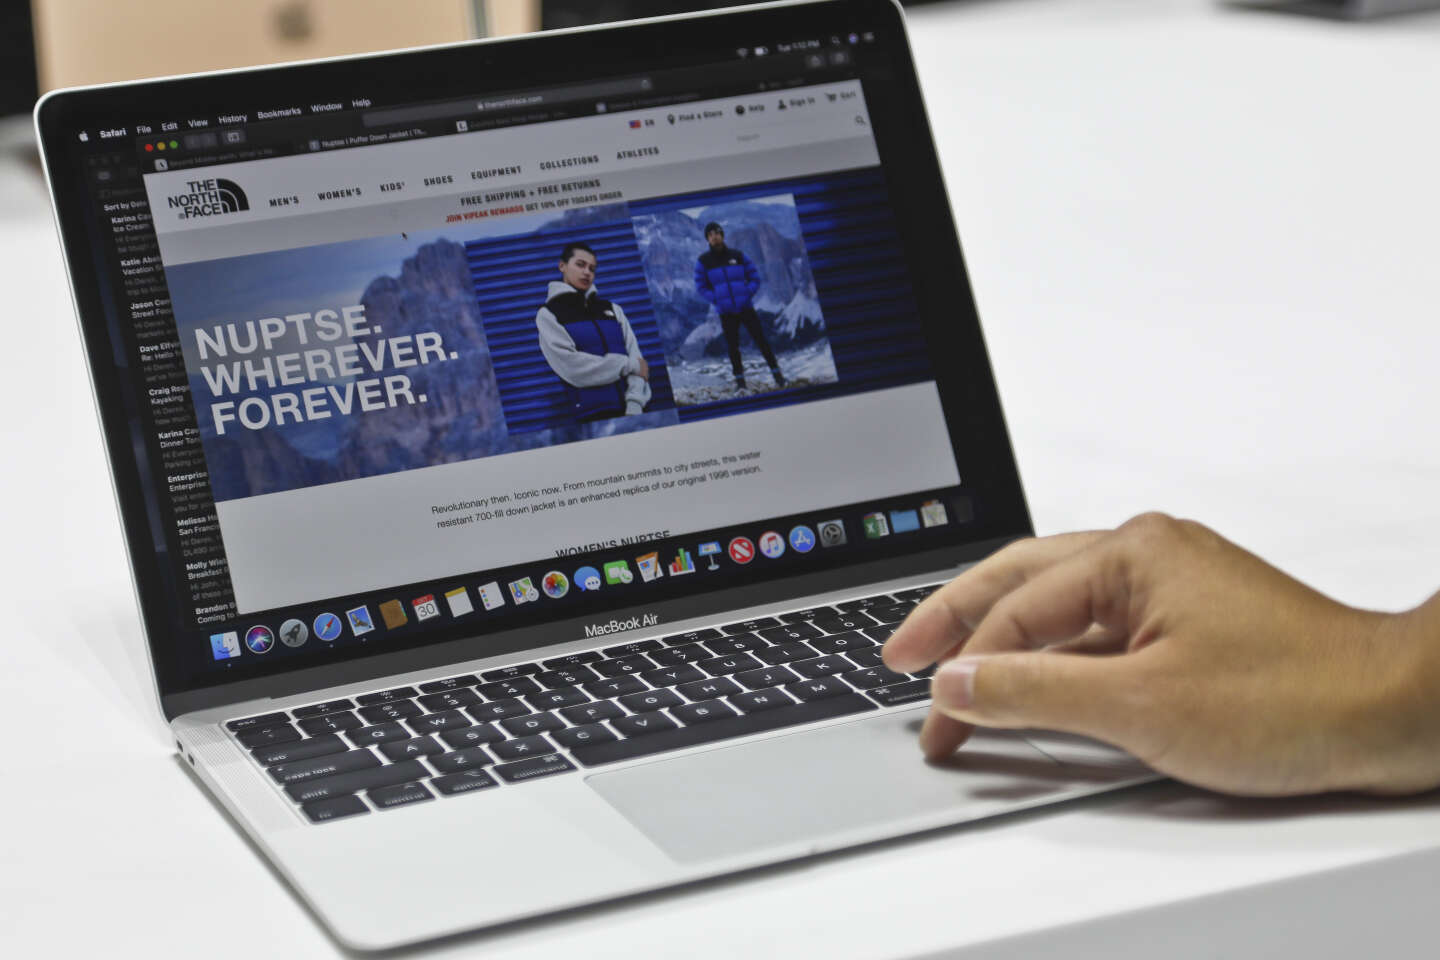 Le clavier de votre MacBook Pro est coincé ? Voici comment régler le  problème (selon Apple) - CNET France